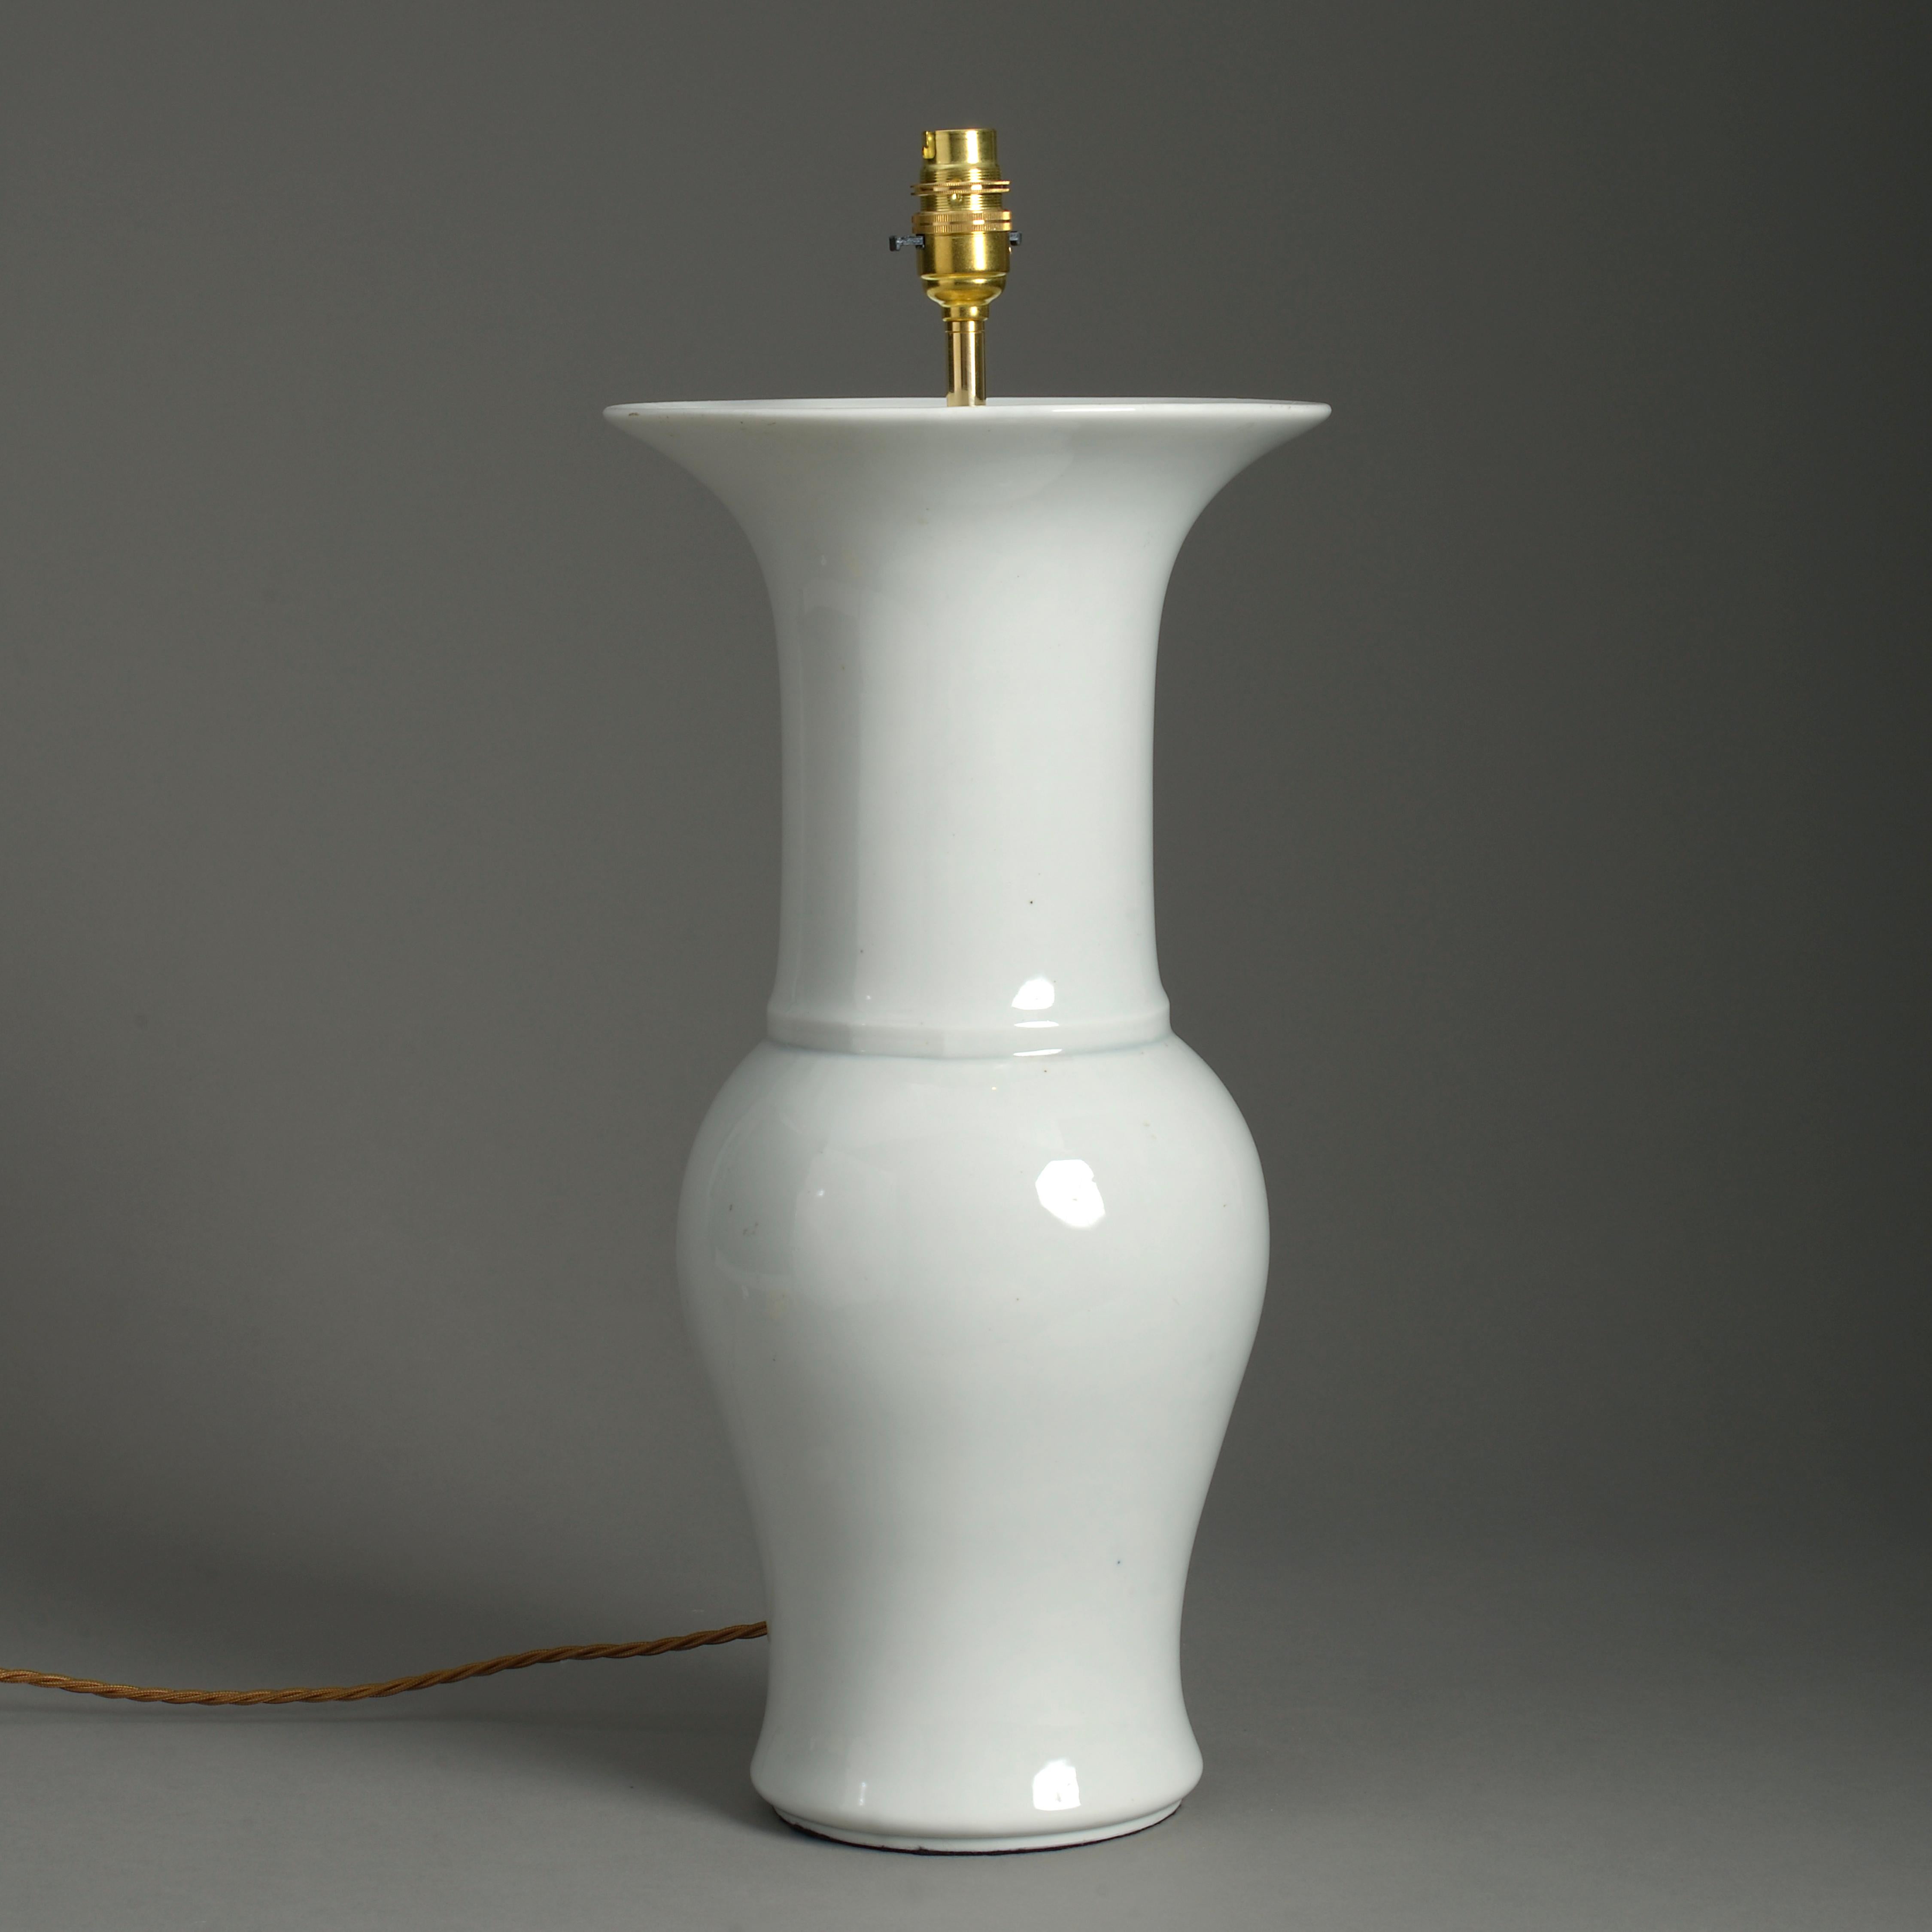 Weiße Porzellanhülsenvase aus dem frühen 20. Jahrhundert mit trompetenförmigem Hals über einem Balusterkörper. Jetzt als Tischlampe verkabelt.

Die Abmessungen beziehen sich nur auf die Höhe der Vase und des Sockels.

Verdrahtet und geprüft nach